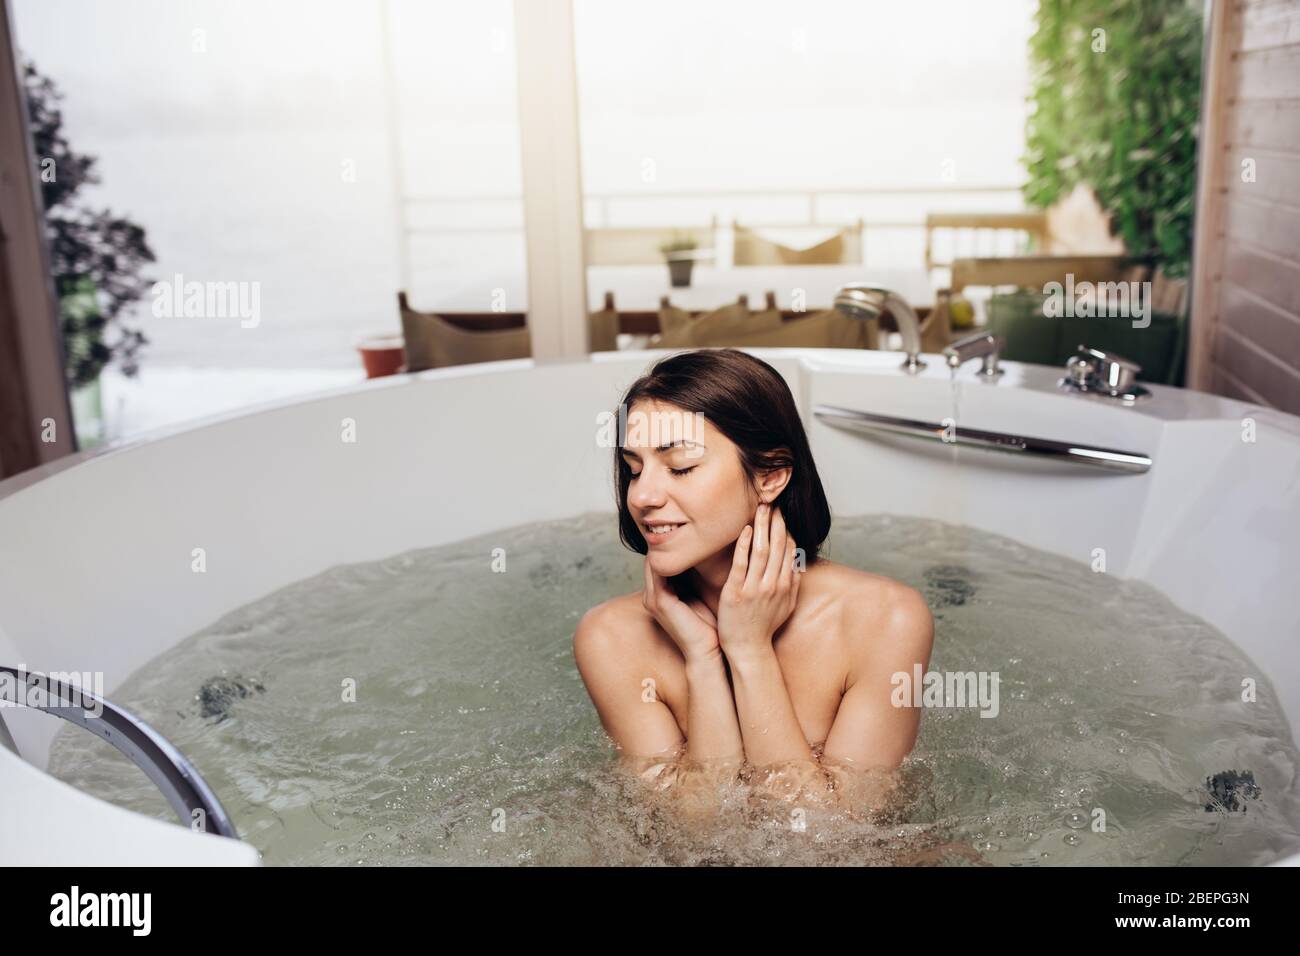 Frau zu Hause im Whirlpool Bad Ritual entspannen.Spa Tag Moment im modernen Bad drinnen Jacuzzi-Wanne.Freizeit Aktivität.Selbstpflege.gute persönliche Hygiene Stockfoto